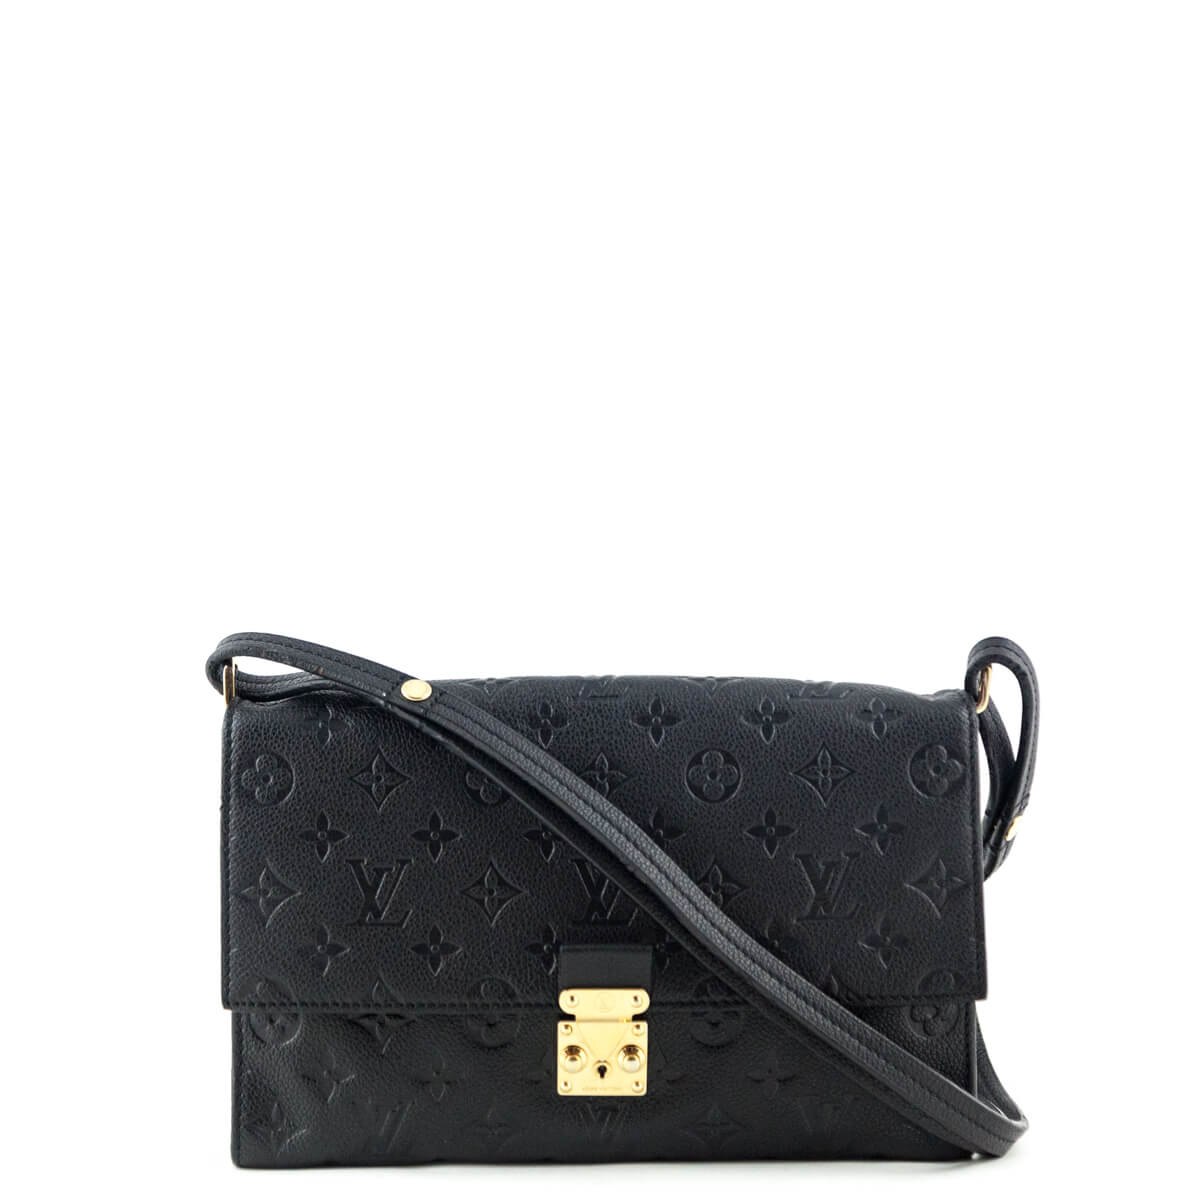 Louis Vuitton Black Empreinte Fascinante Bag - Authentic LV Bags